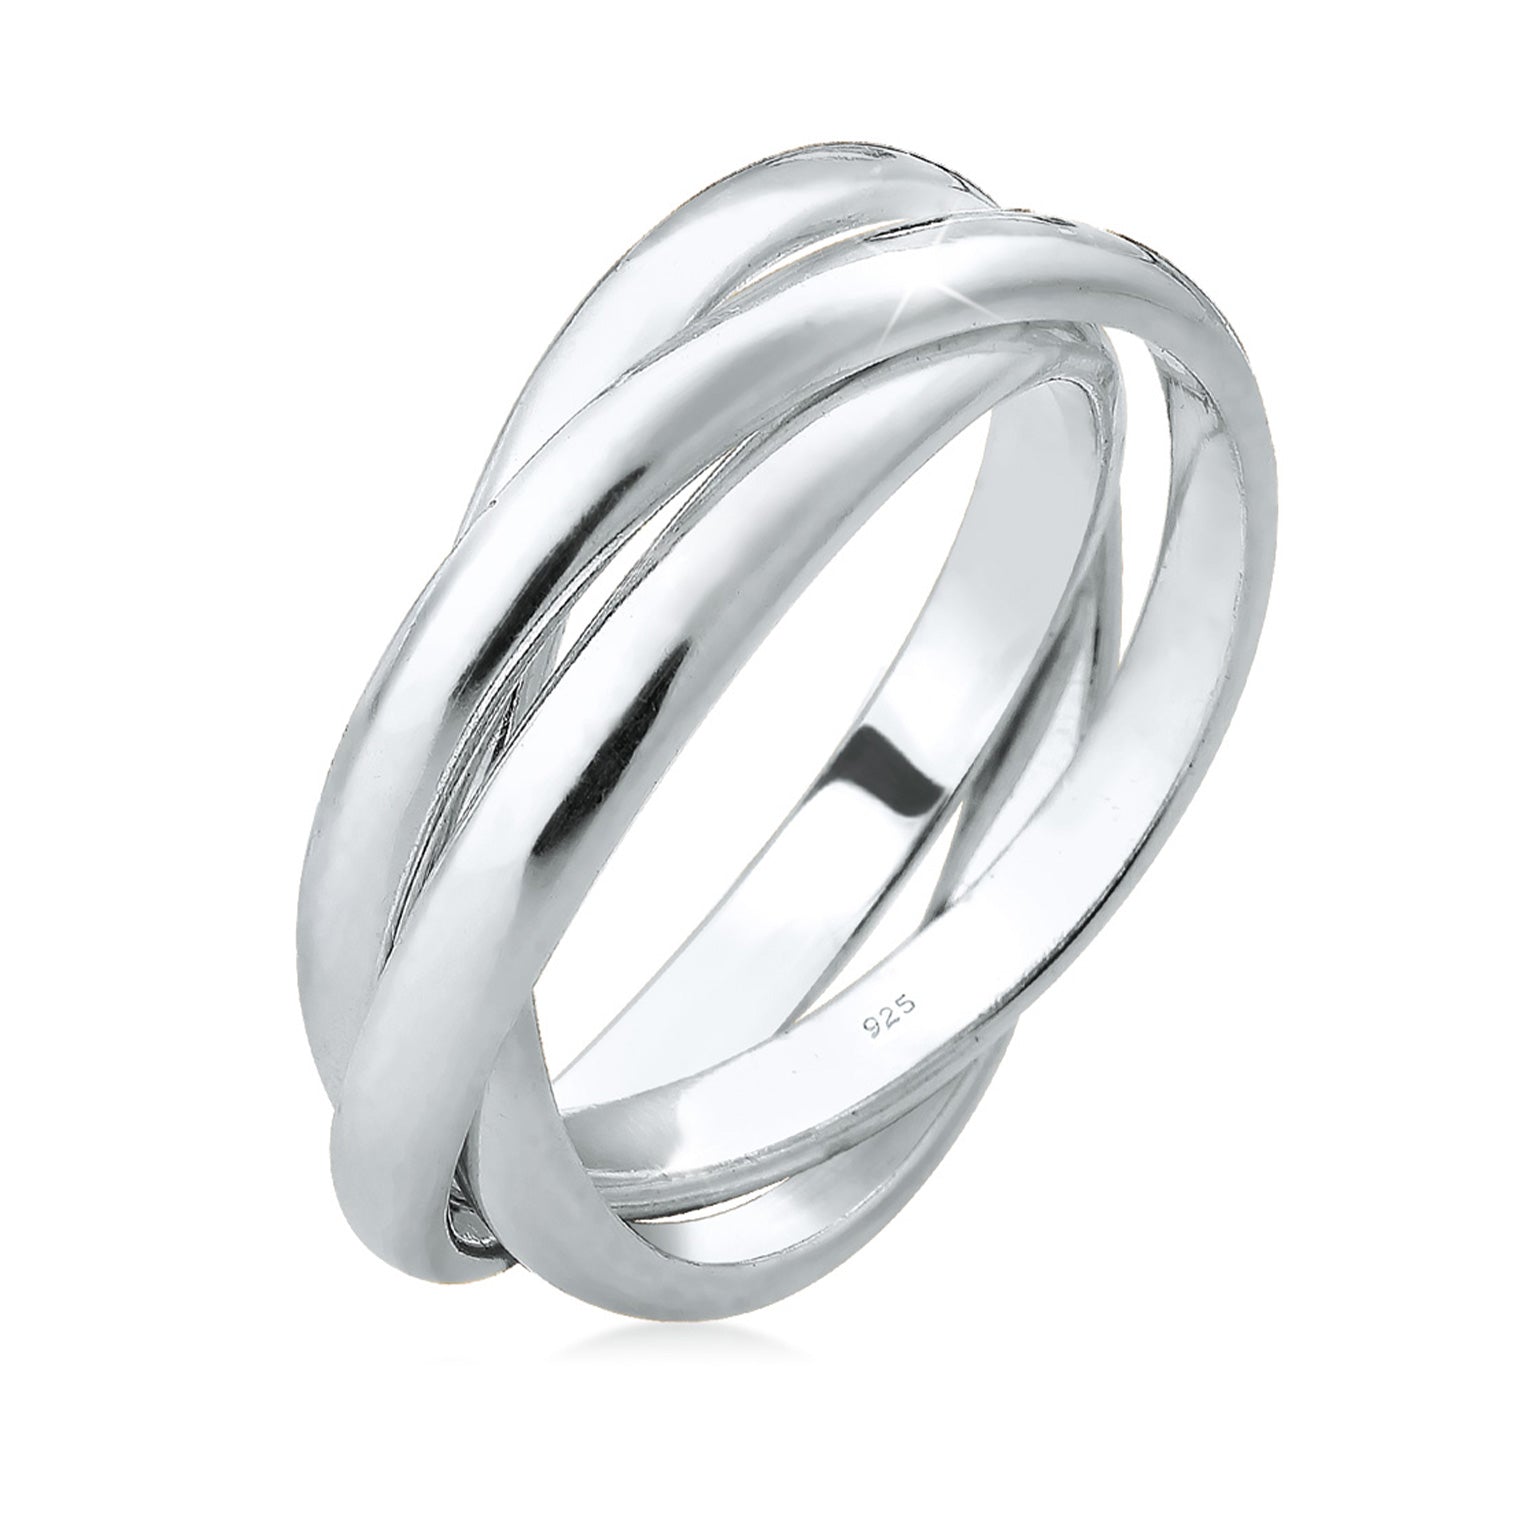 Ringe aus Silber oder Gold | bei Elli kaufen | TOP Auswahl – Elli Jewelry